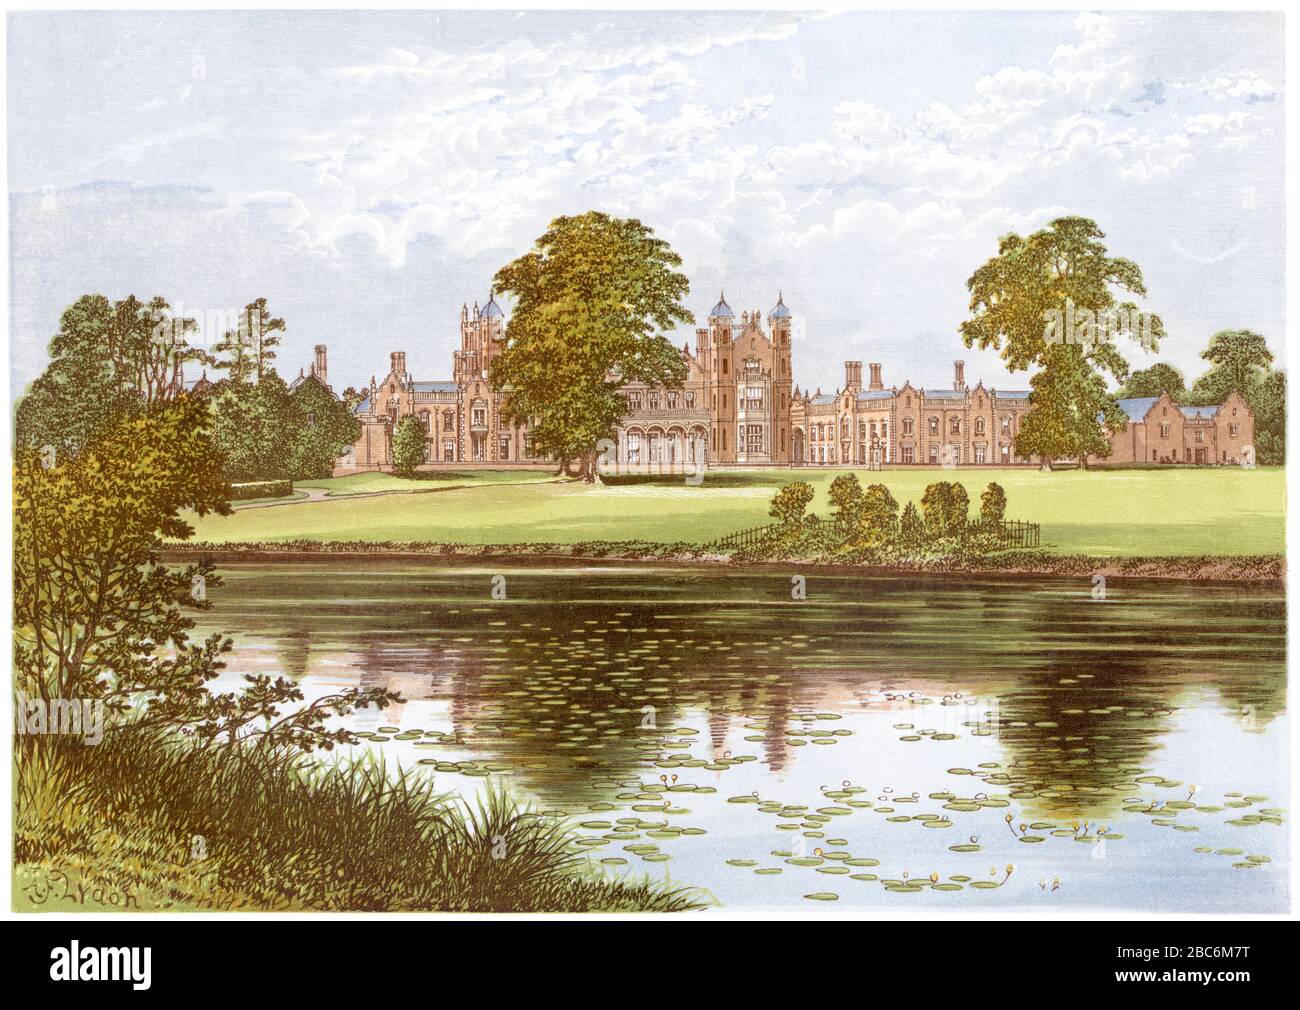 Illustration colorée du Capesthorne Hall près de Siddington, Cheshire a numérisé à haute résolution à partir d'un livre imprimé en 1870. Considéré comme libre de droits d'auteur. Banque D'Images